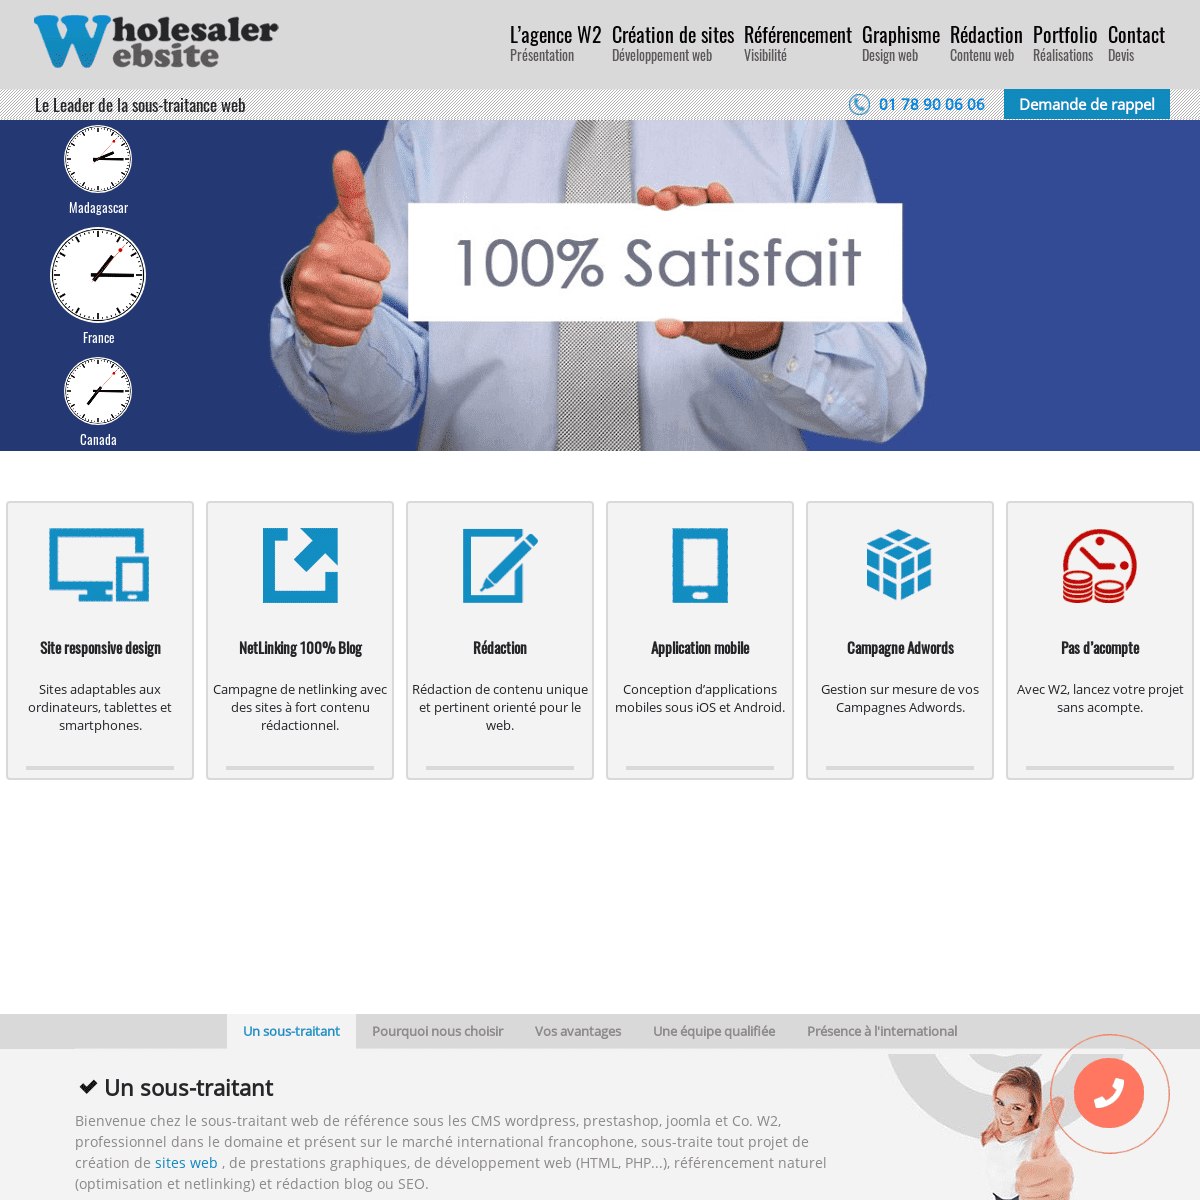 A complete backup of https://wholesaler-website.com